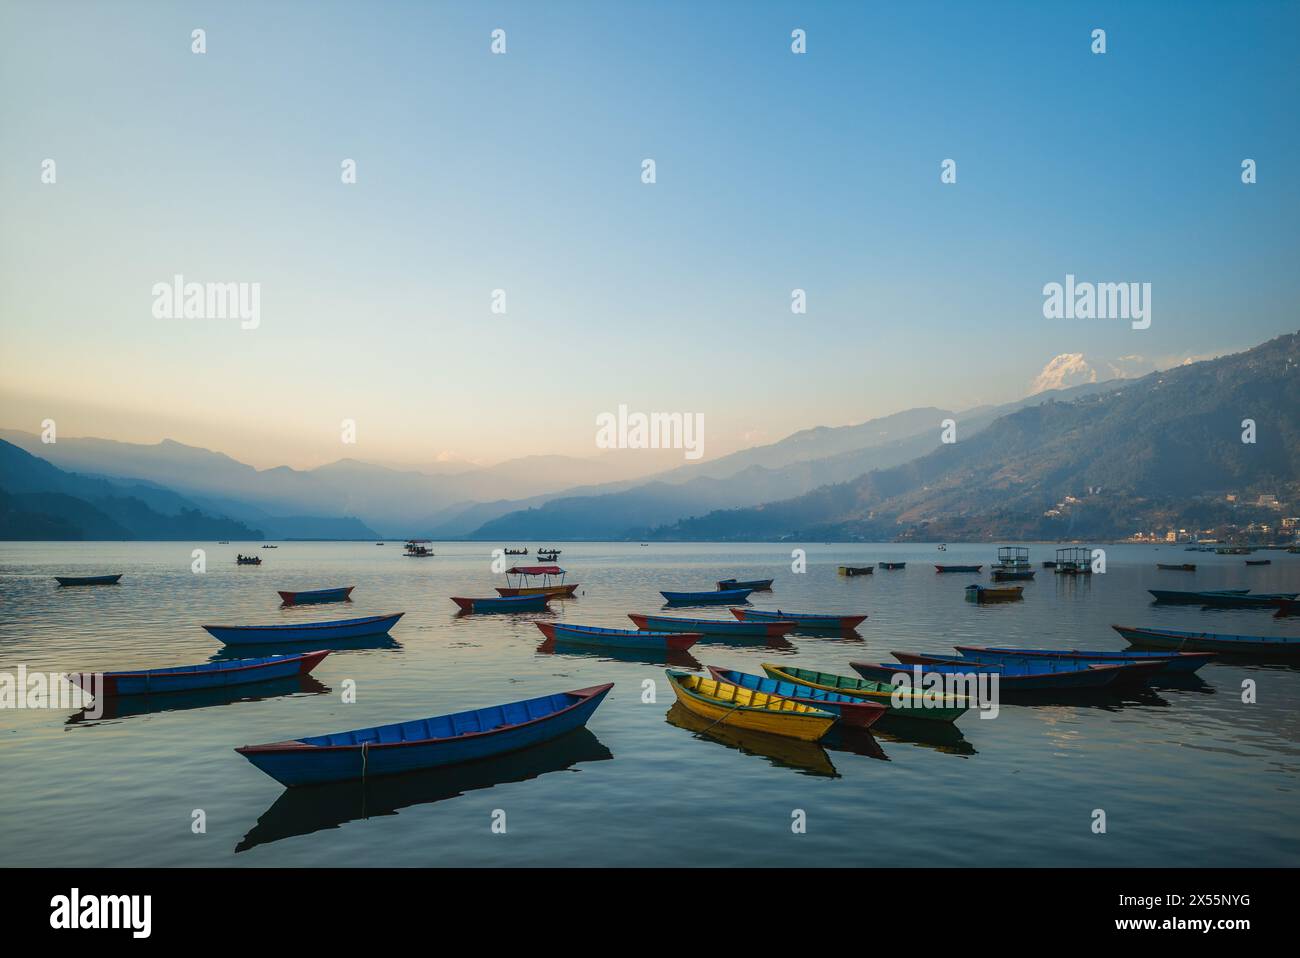 Scenery of Phewa Tal, or Fewa Lake, located at Pokhara, Nepal Stock Photo